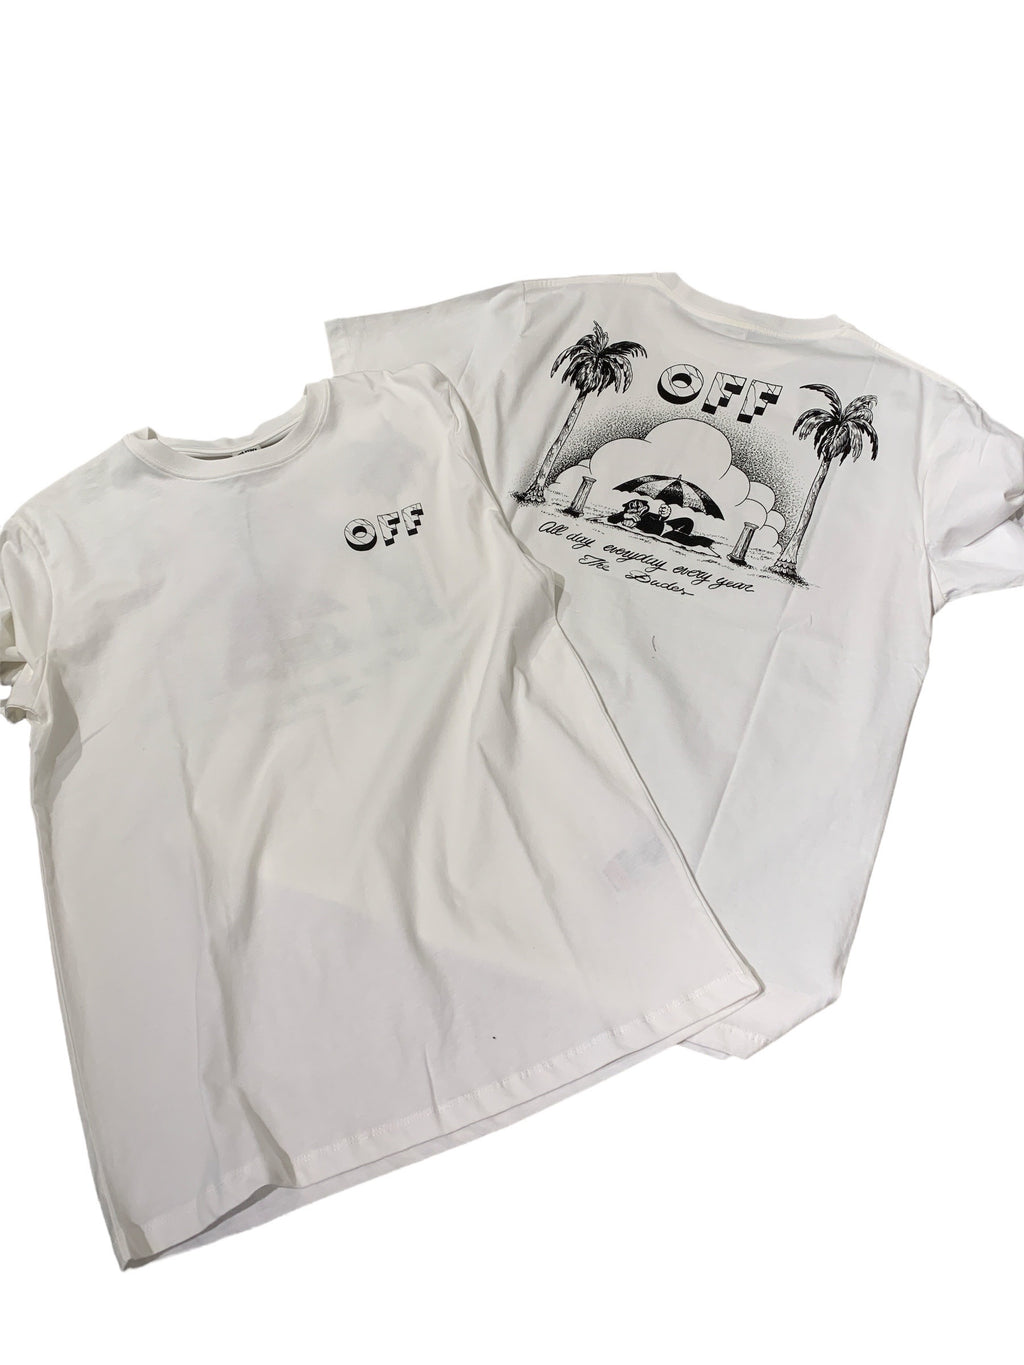 T-Shirt in Farbe Off-white von The Dudes  mit Großem Backprint OFF.